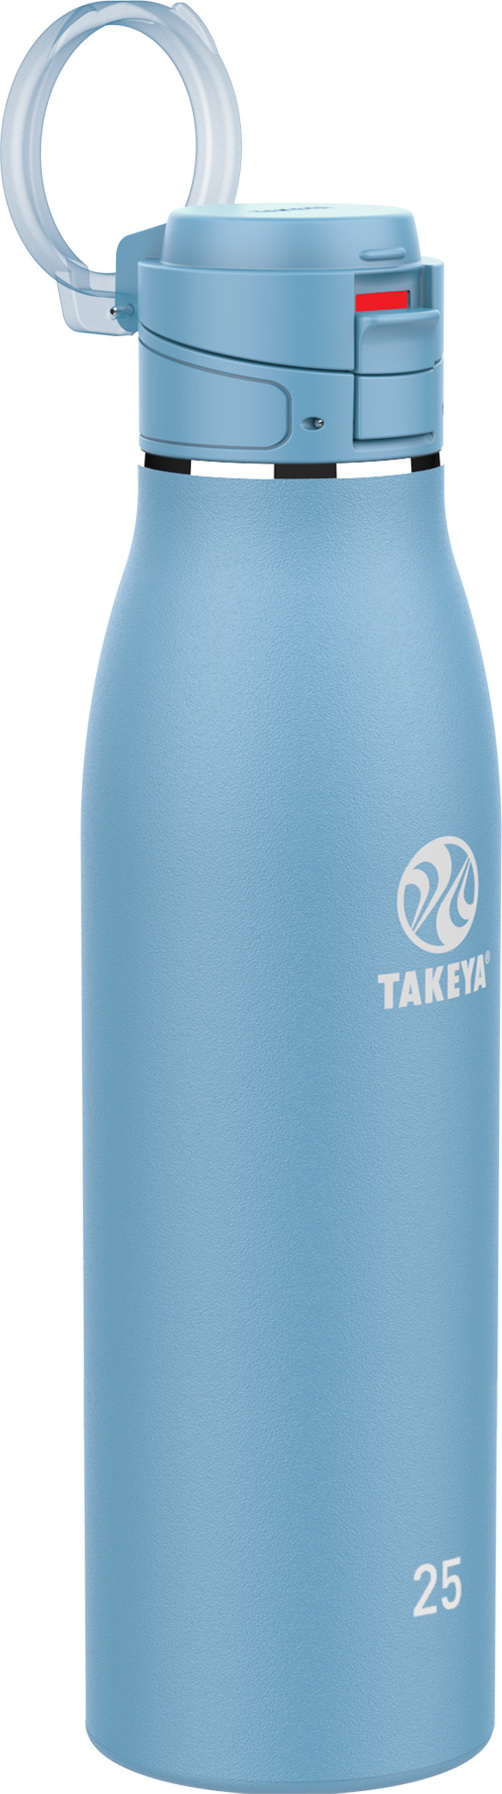 Takeya Actives Insulated Traveler 740 ml Bluestone 740 ml, Bluestone